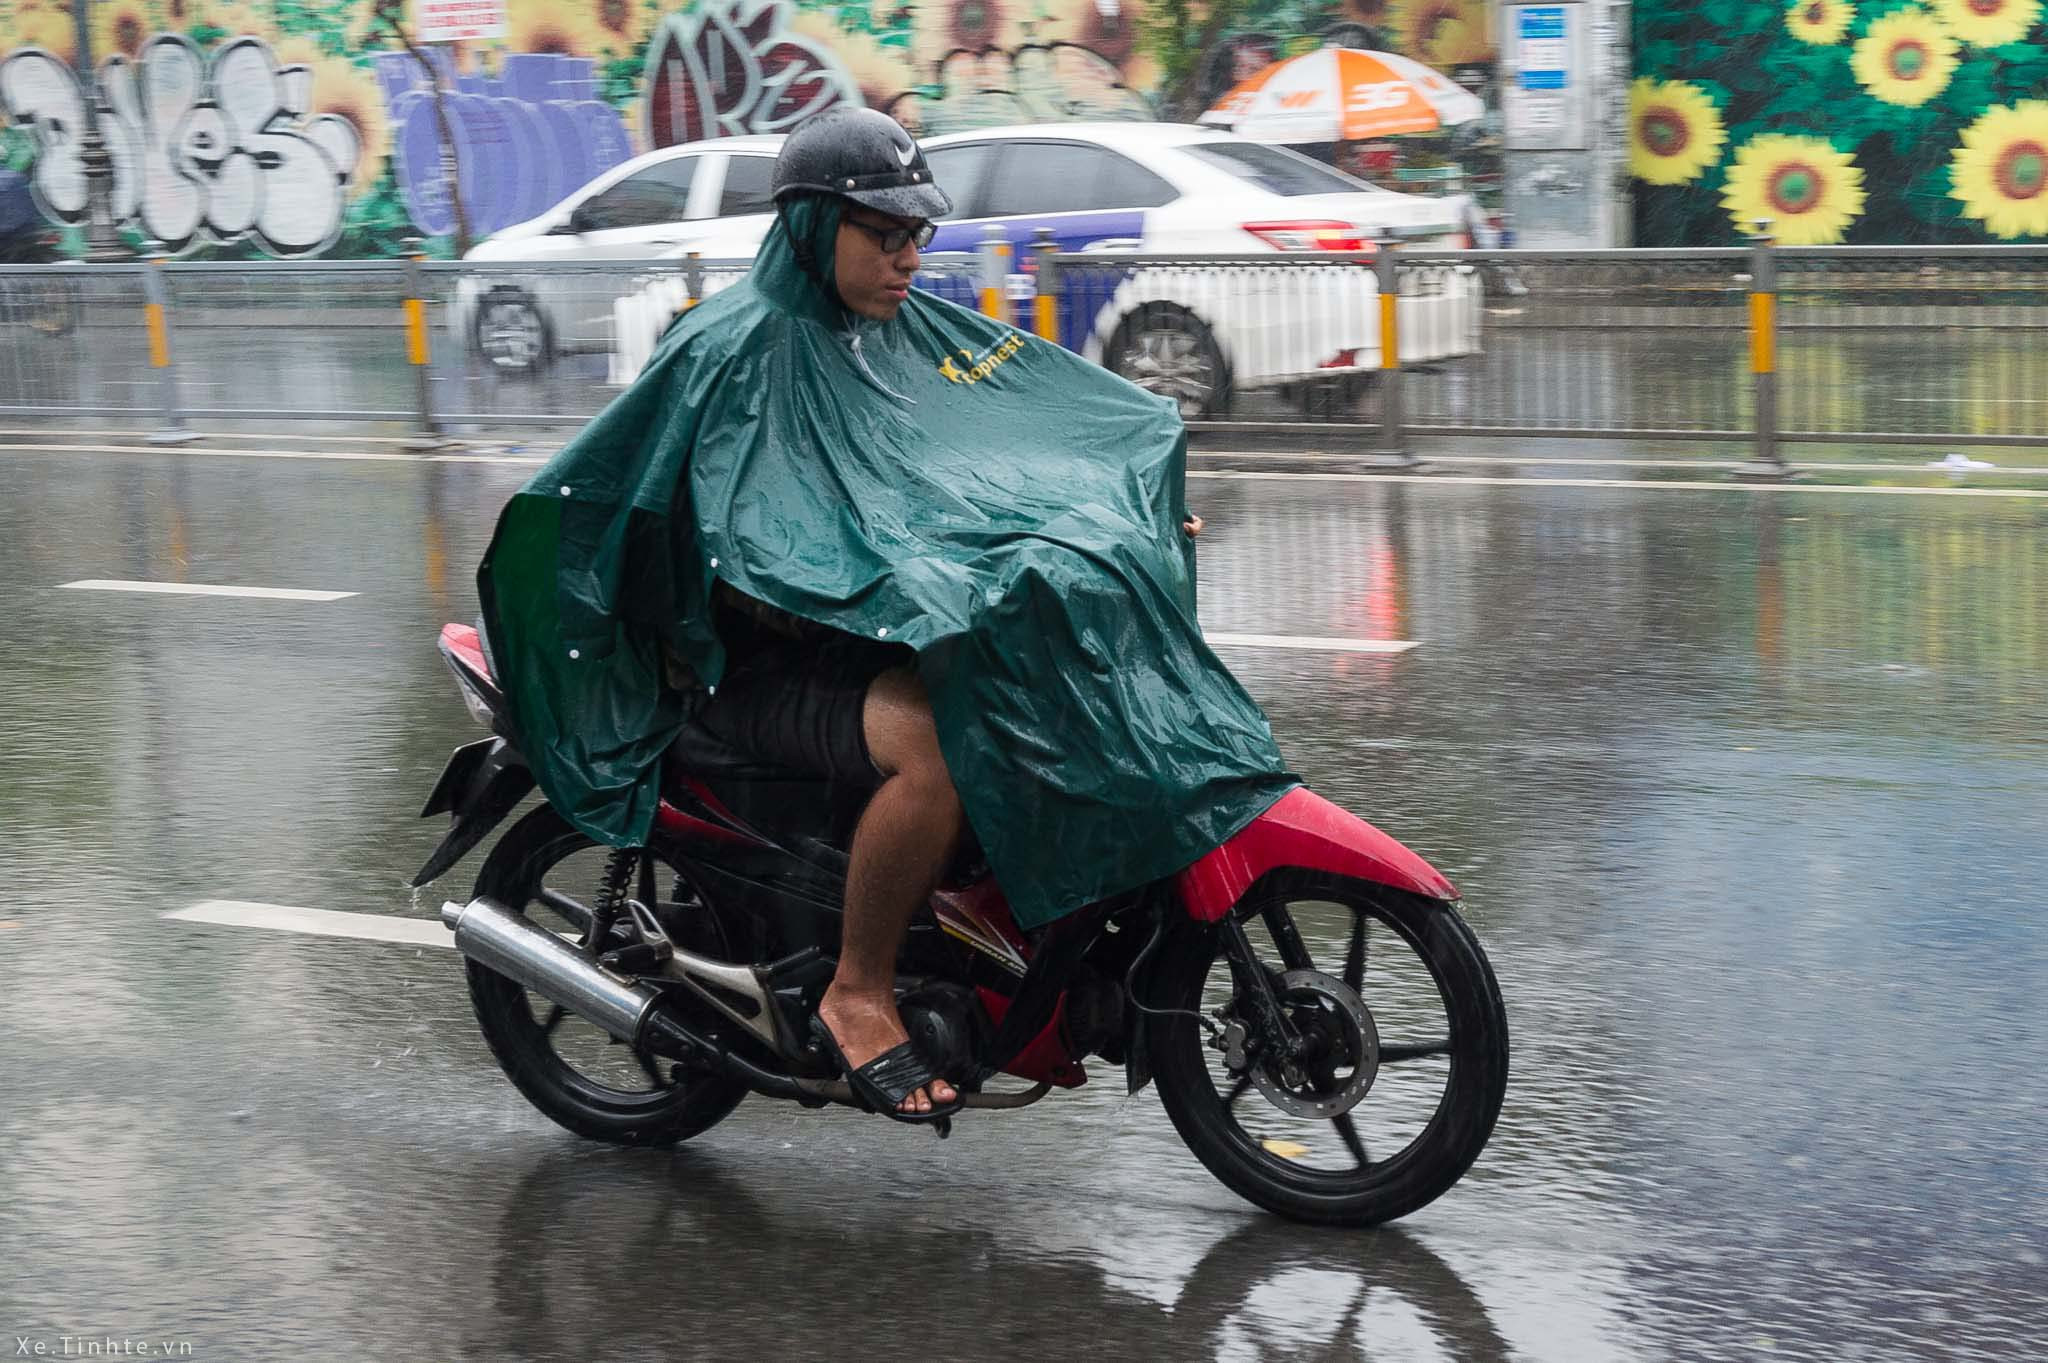 chọn áo mưa khi đi xe máy